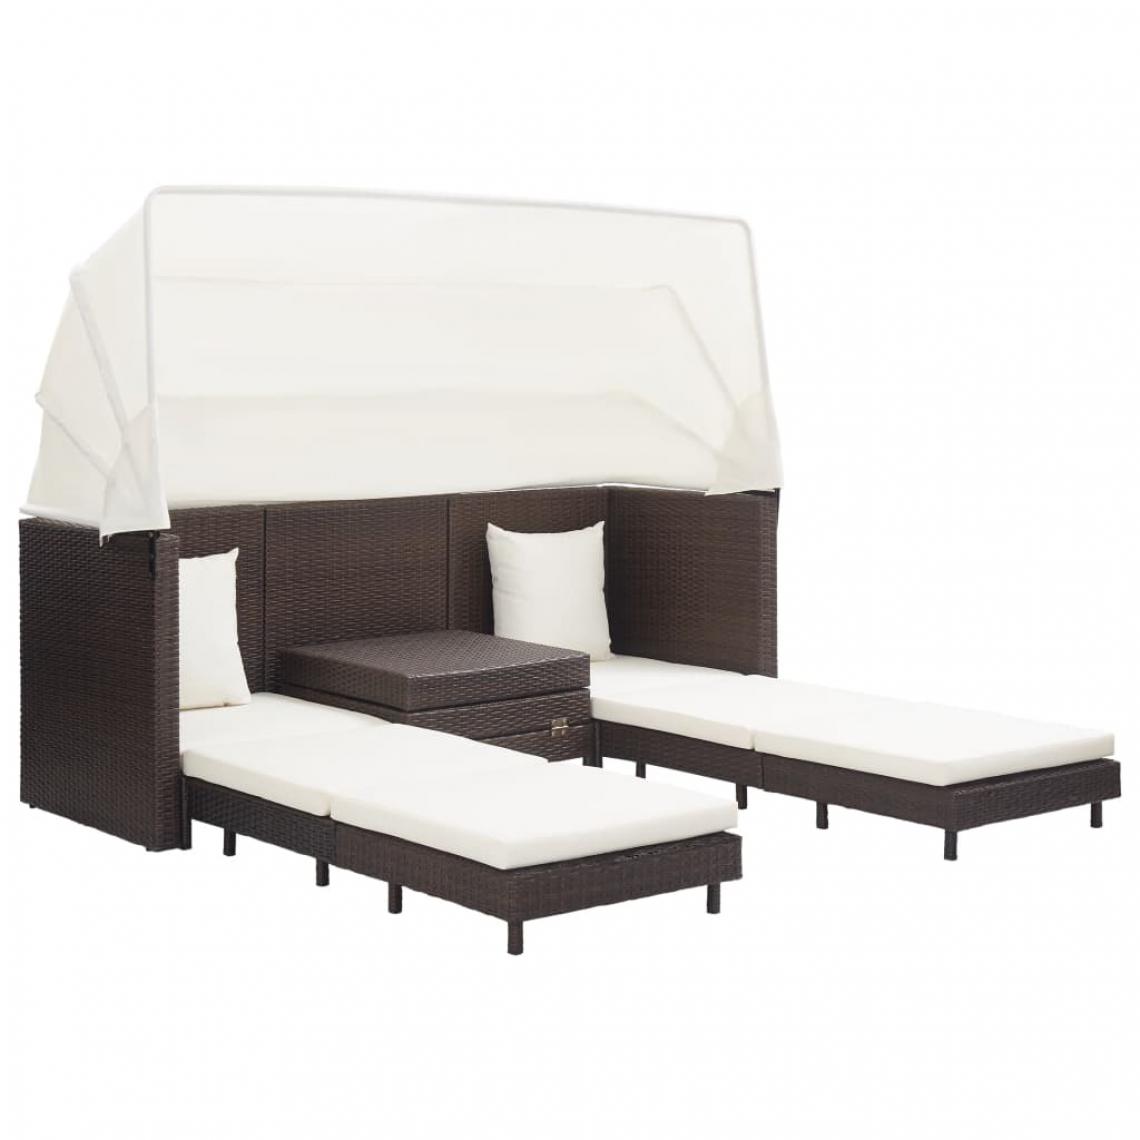 Icaverne - Icaverne - Canapés de jardin gamme Canapé-lit extensible 3 places avec toit Résine tressée Marron - Fauteuil de jardin